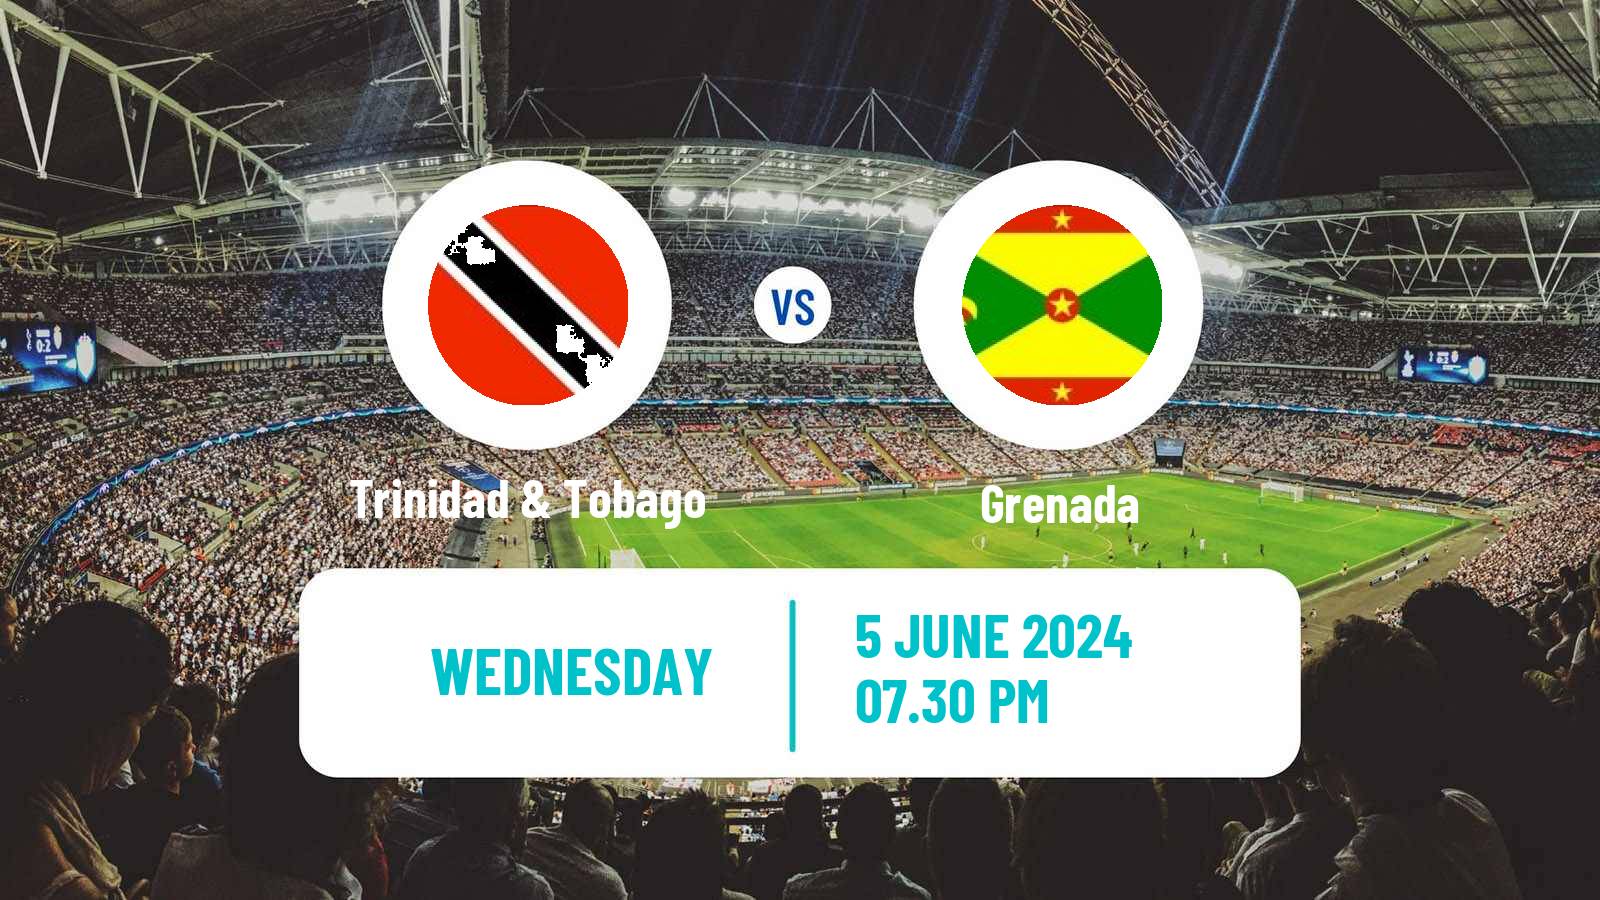 Soccer FIFA World Cup Trinidad & Tobago - Grenada